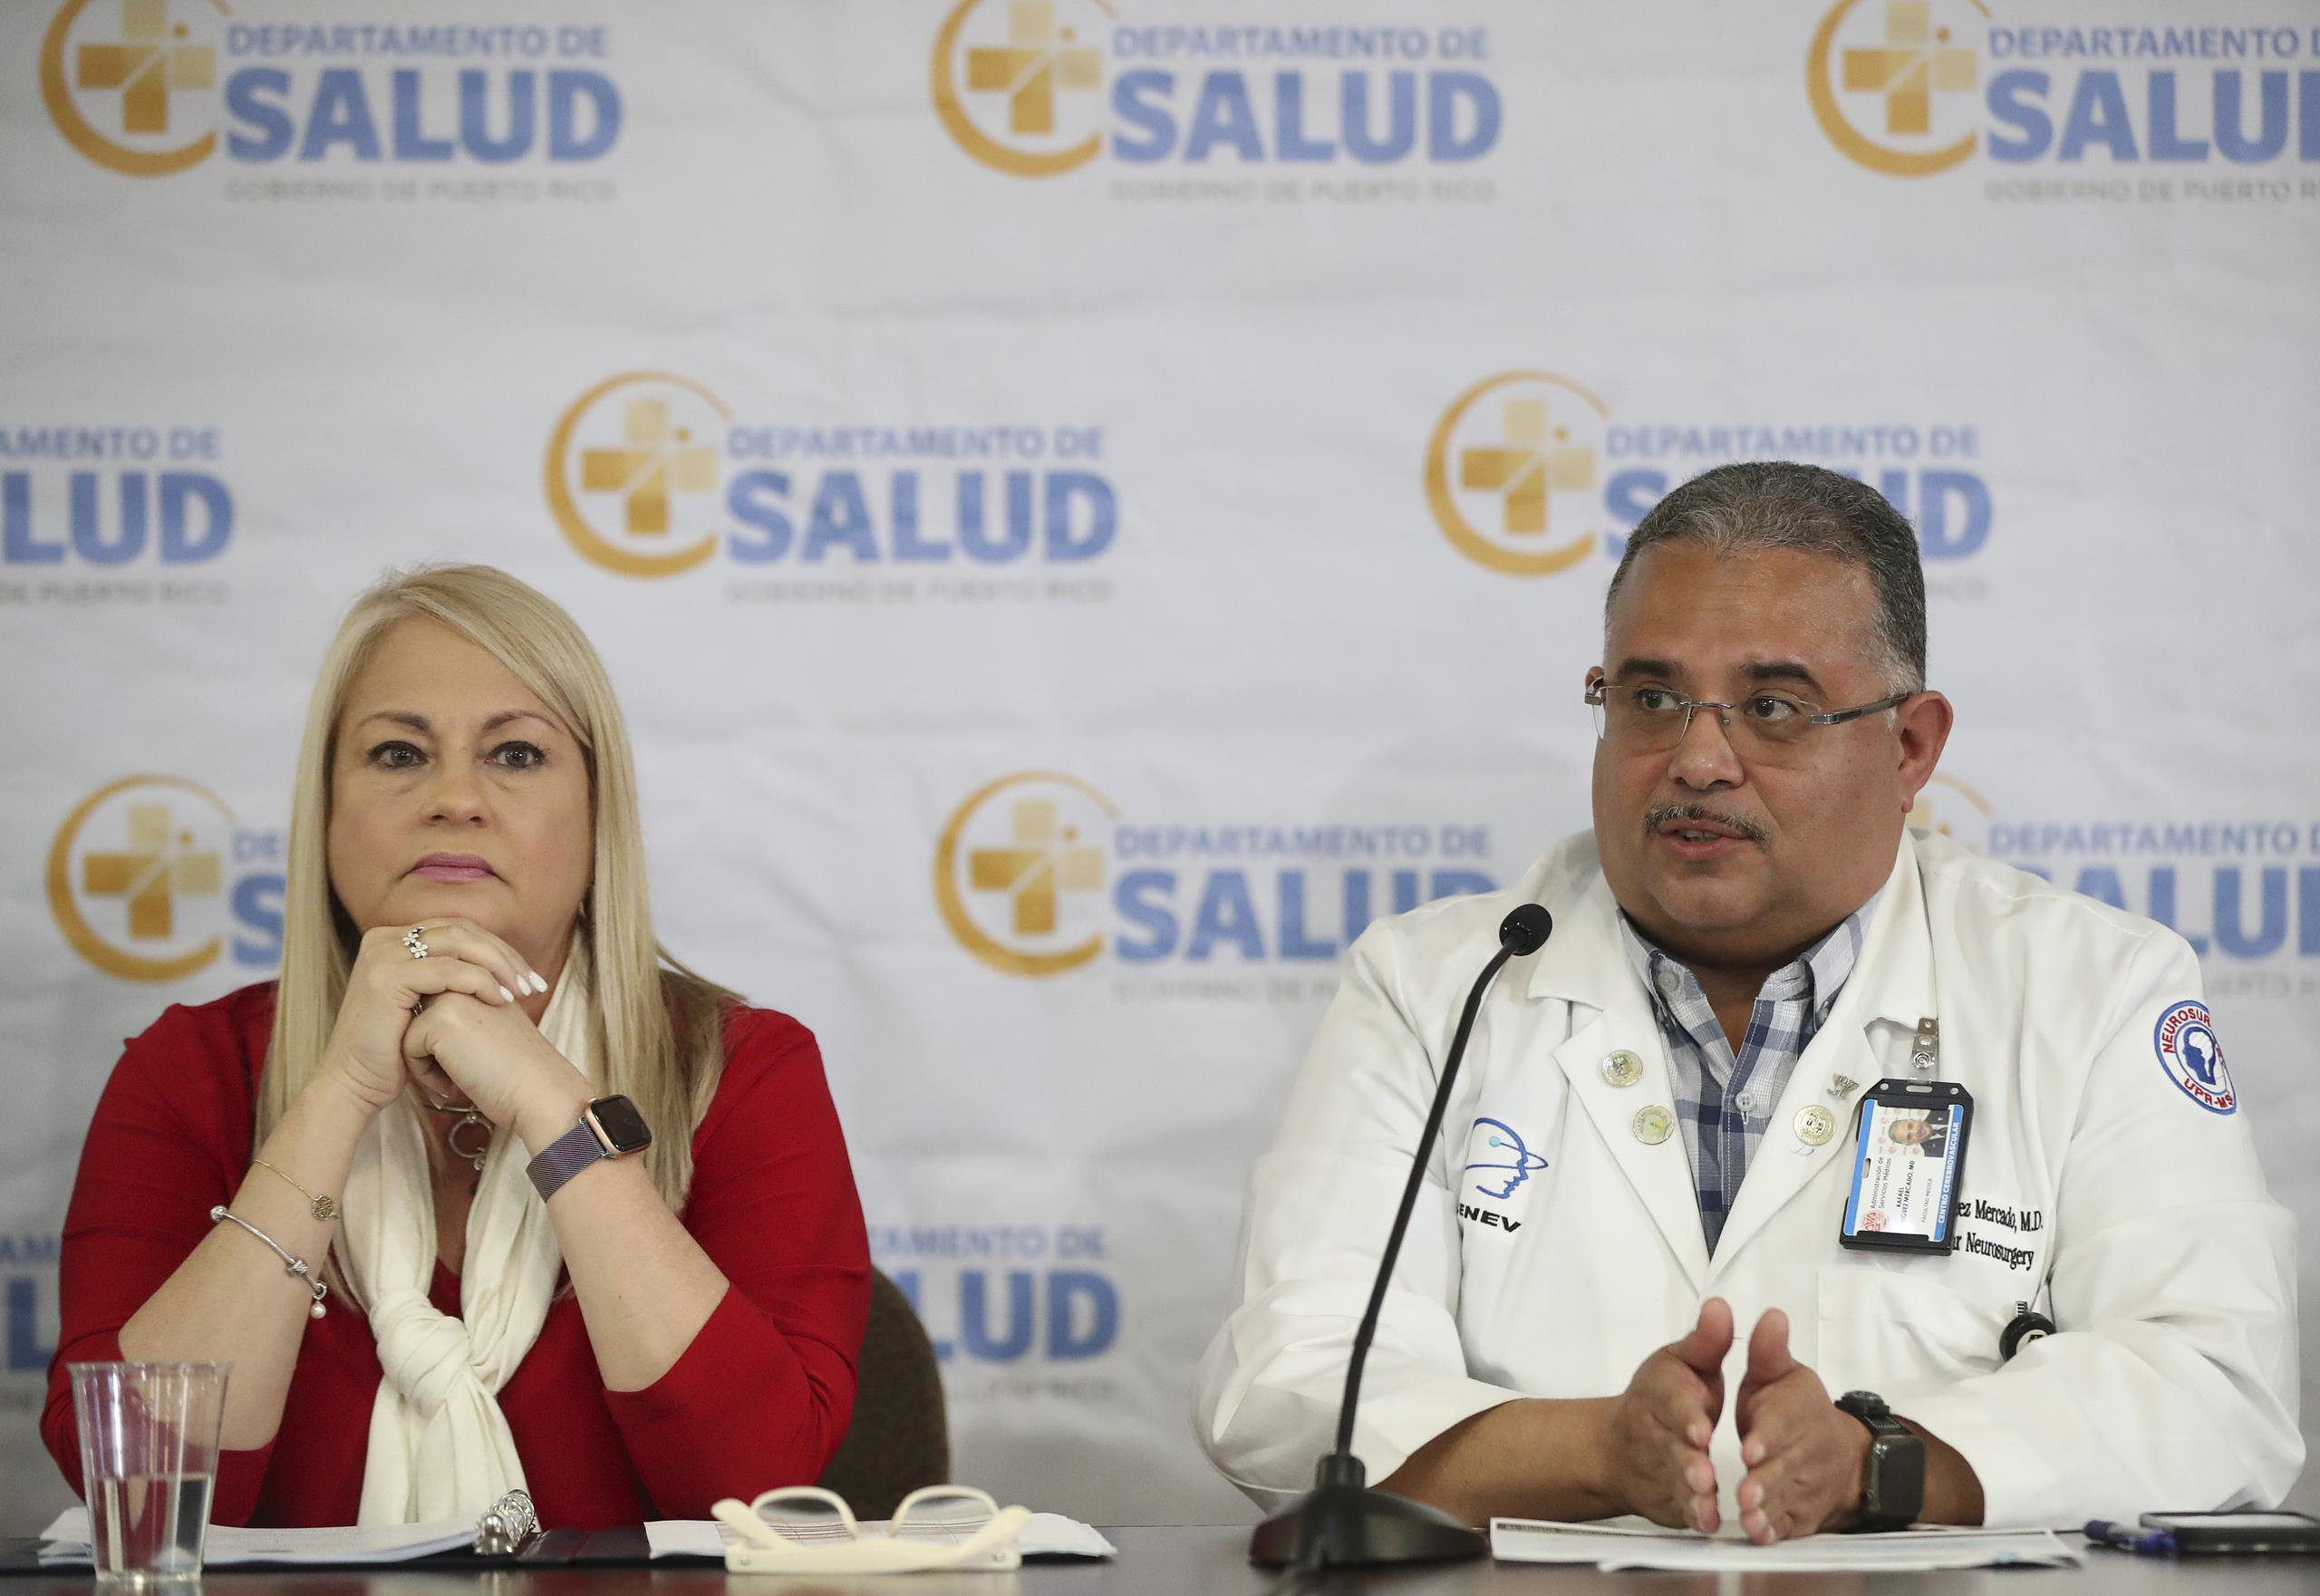 La gobernadora Wanda Vzquez, junto al secretario de Salud, Rafael Rodríguez Mercado, enfatizó que estar informados es la mejor arma de prevención contra el coronavirus.